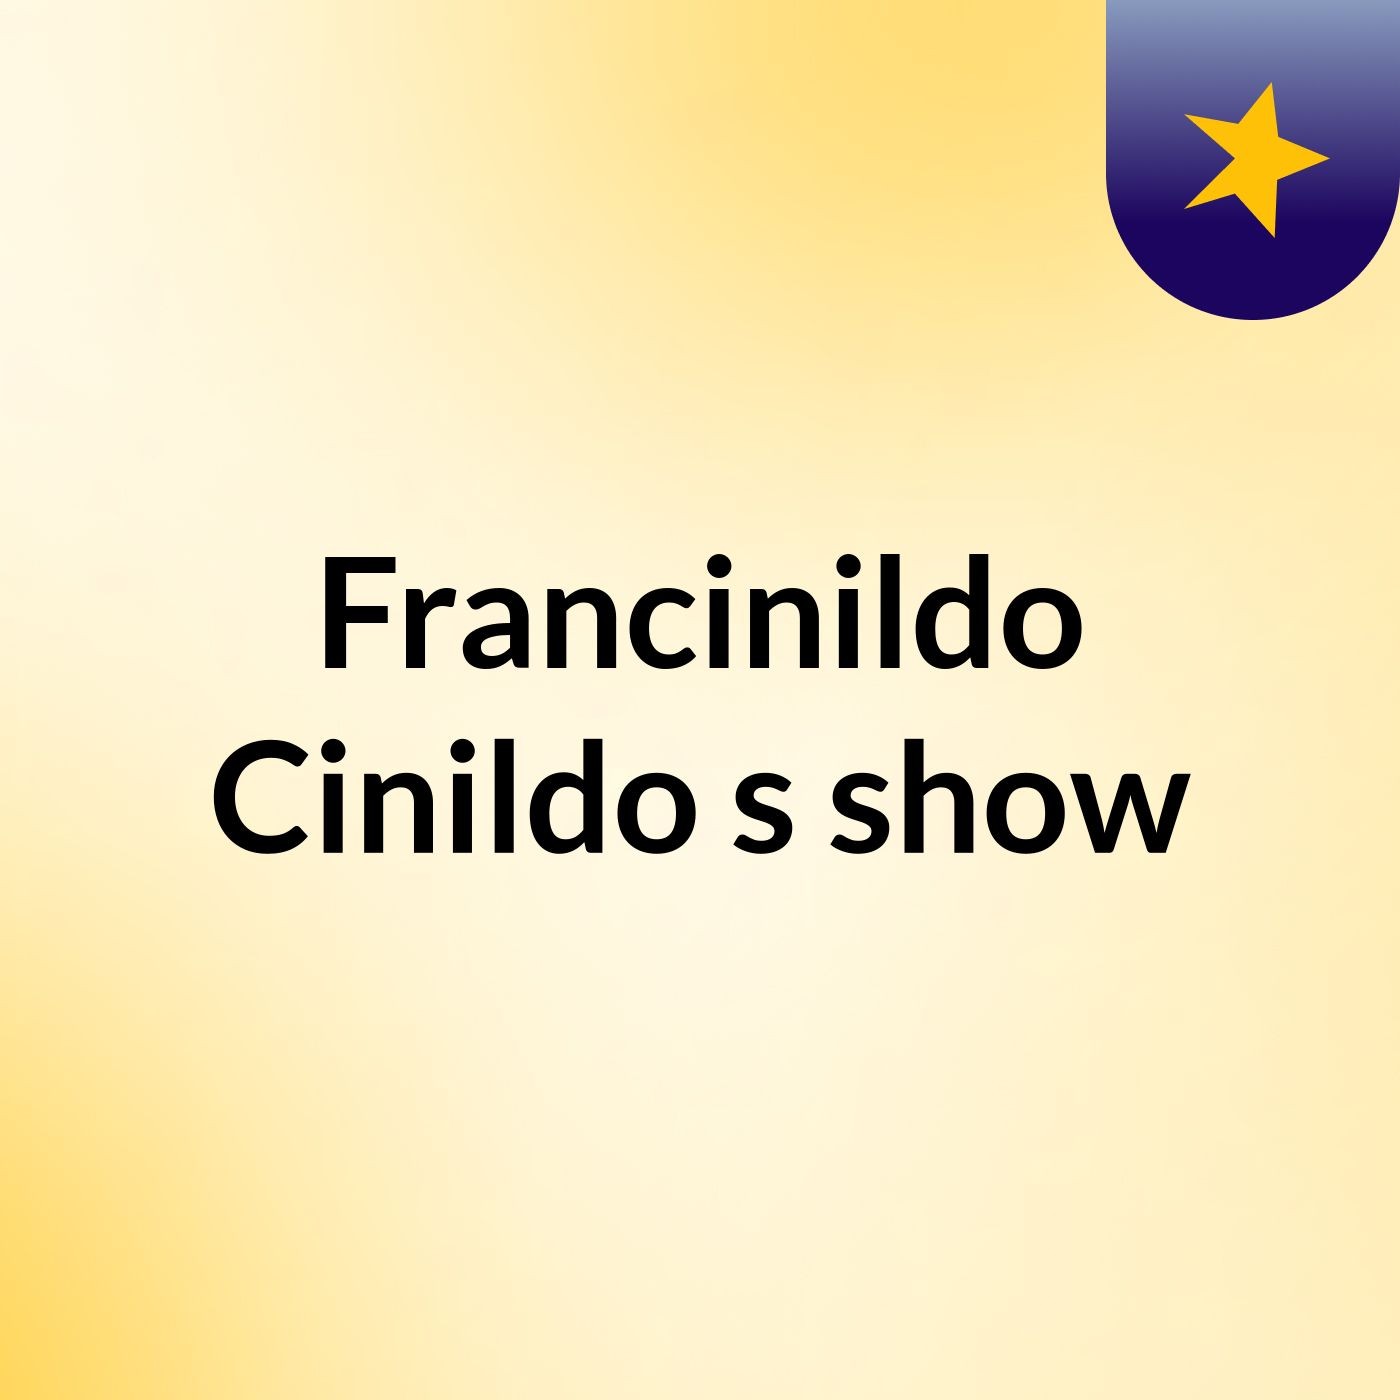 Francinildo Cinildo's show